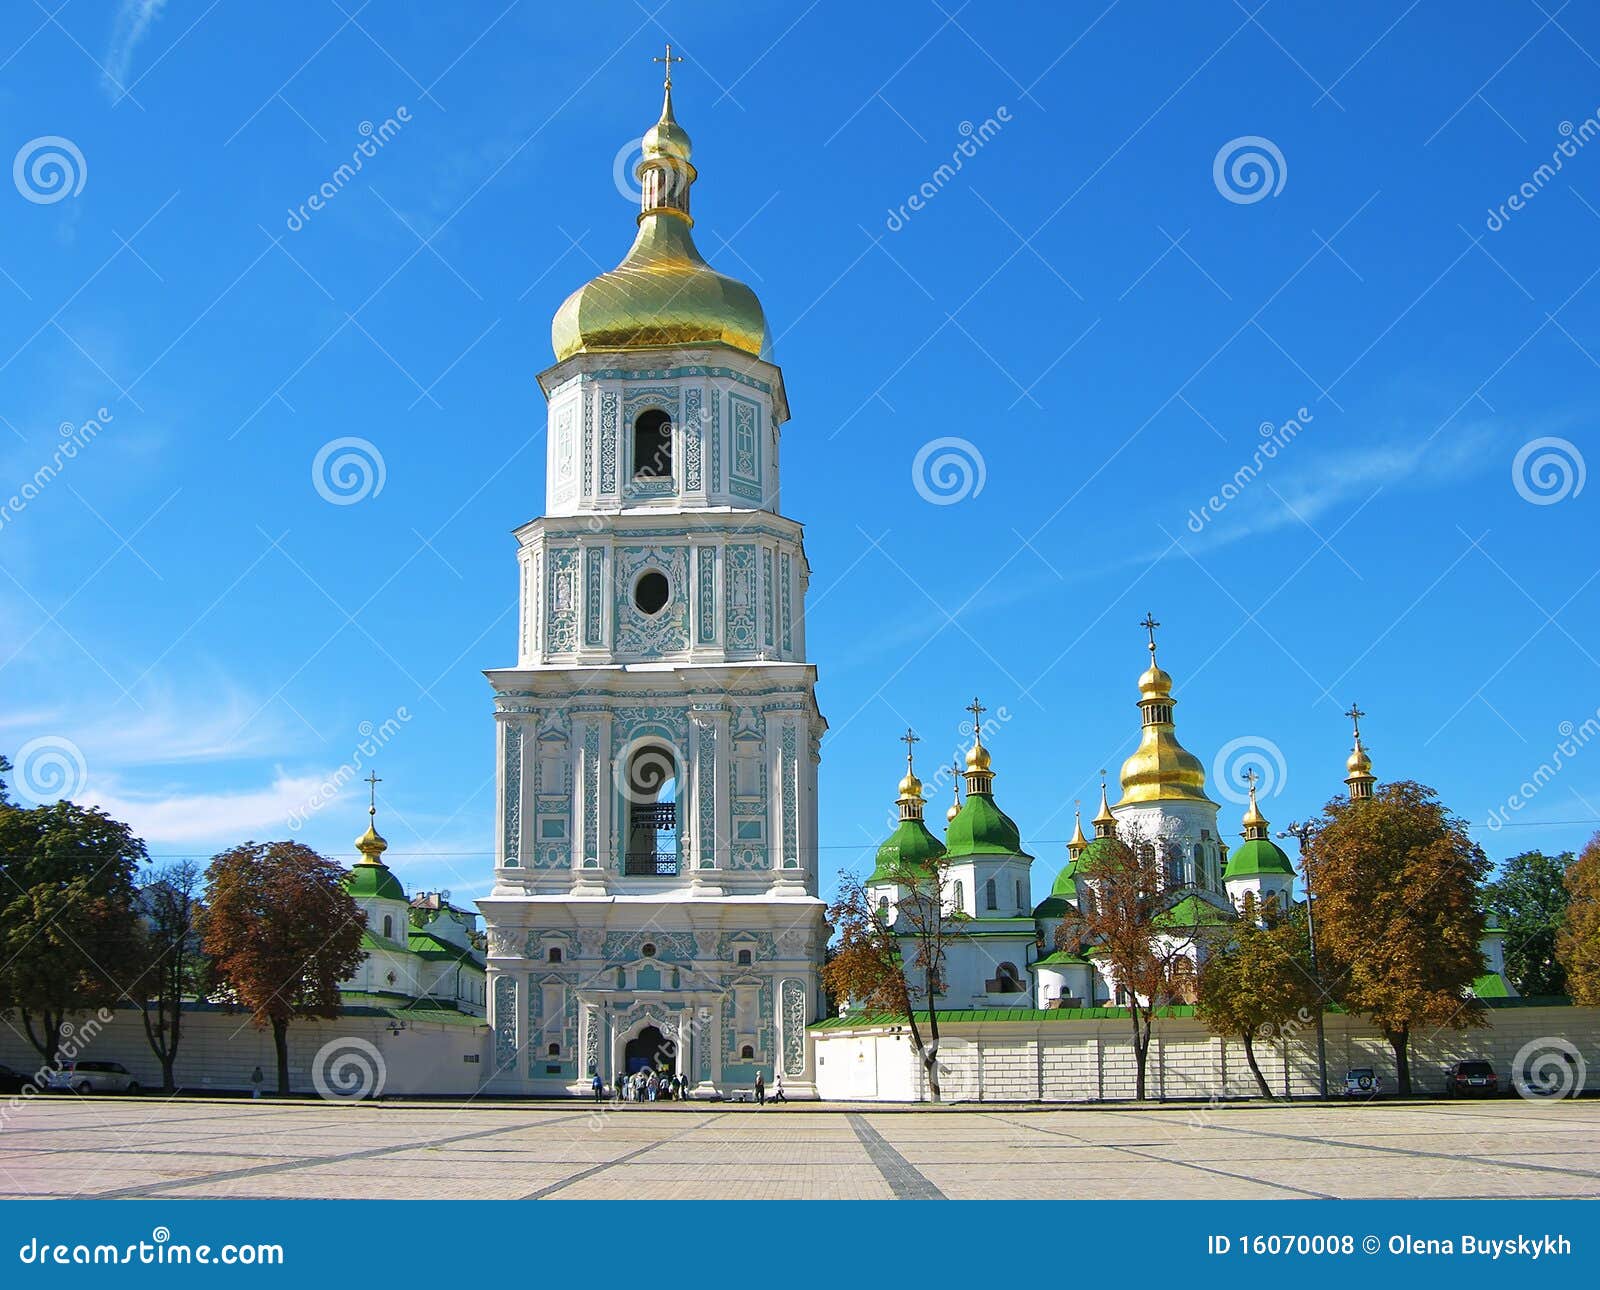 st. sophia cathedral, kiev, ukraine